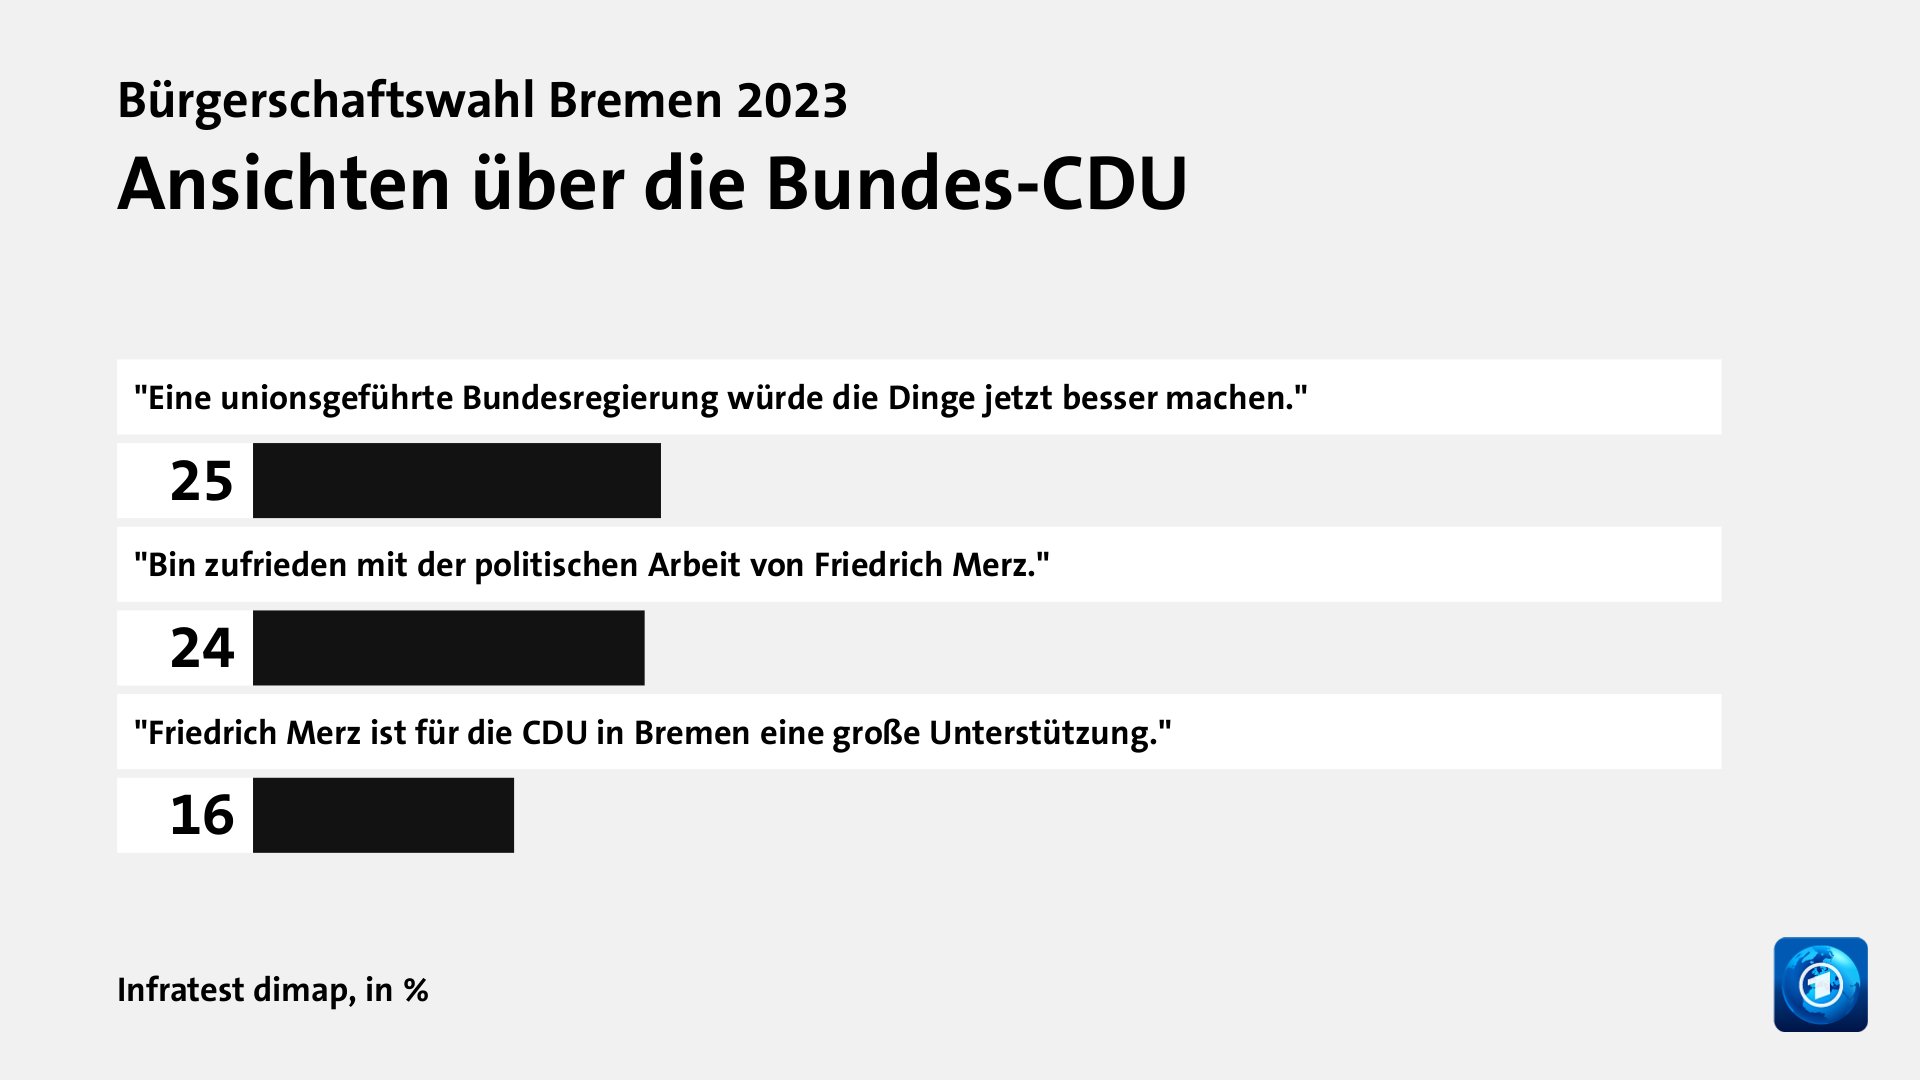 Ansichten über die Bundes-CDU, in %: 